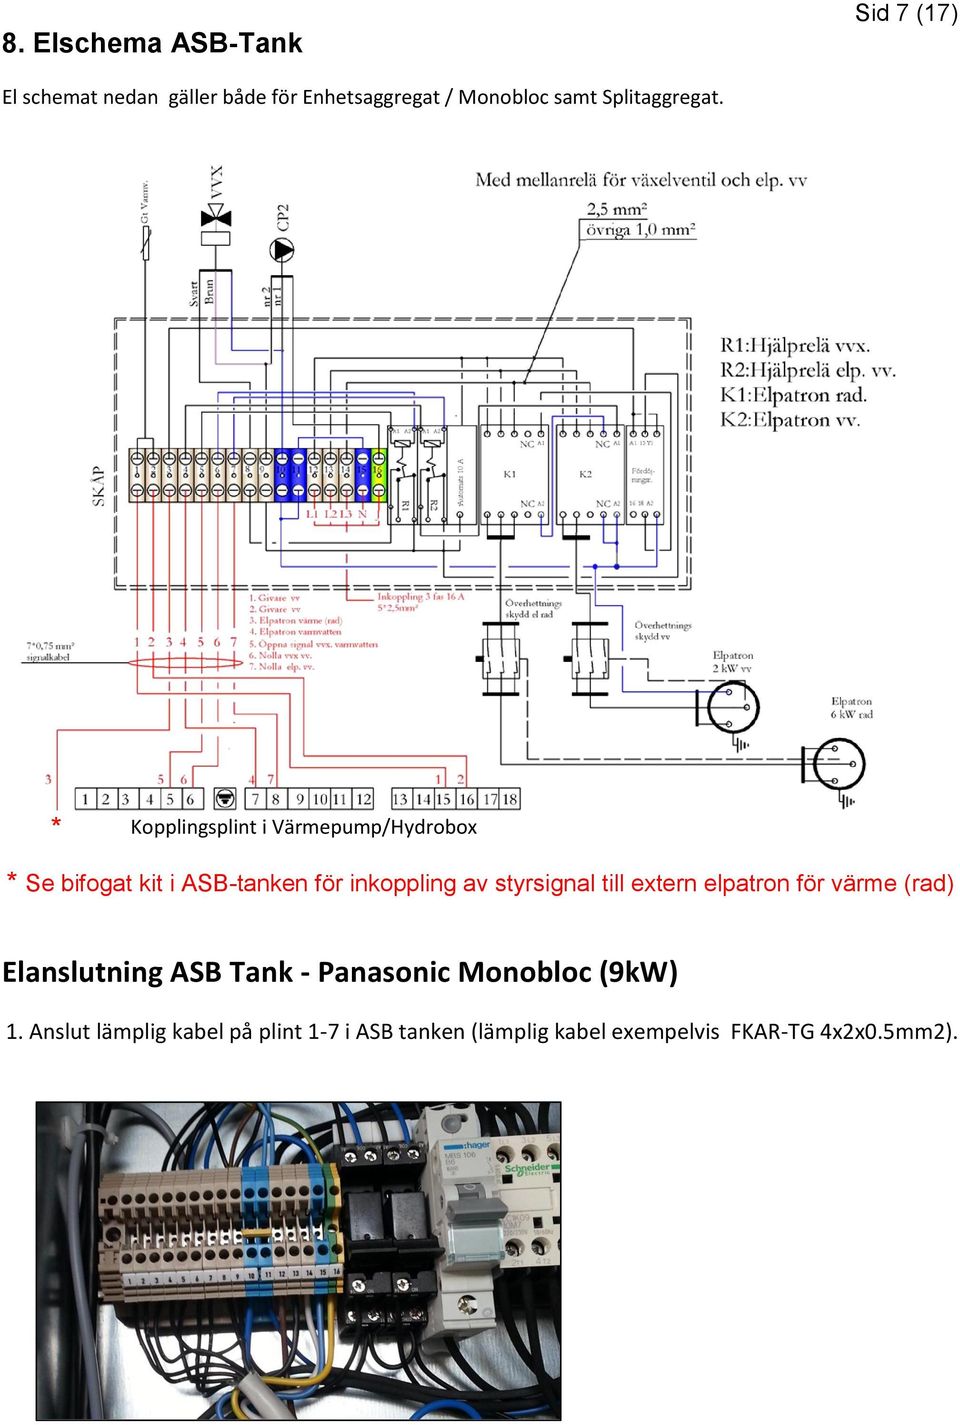 * Kopplingsplint i Värmepump/Hydrobox * Se bifogat kit i ASB-tanken för inkoppling av styrsignal